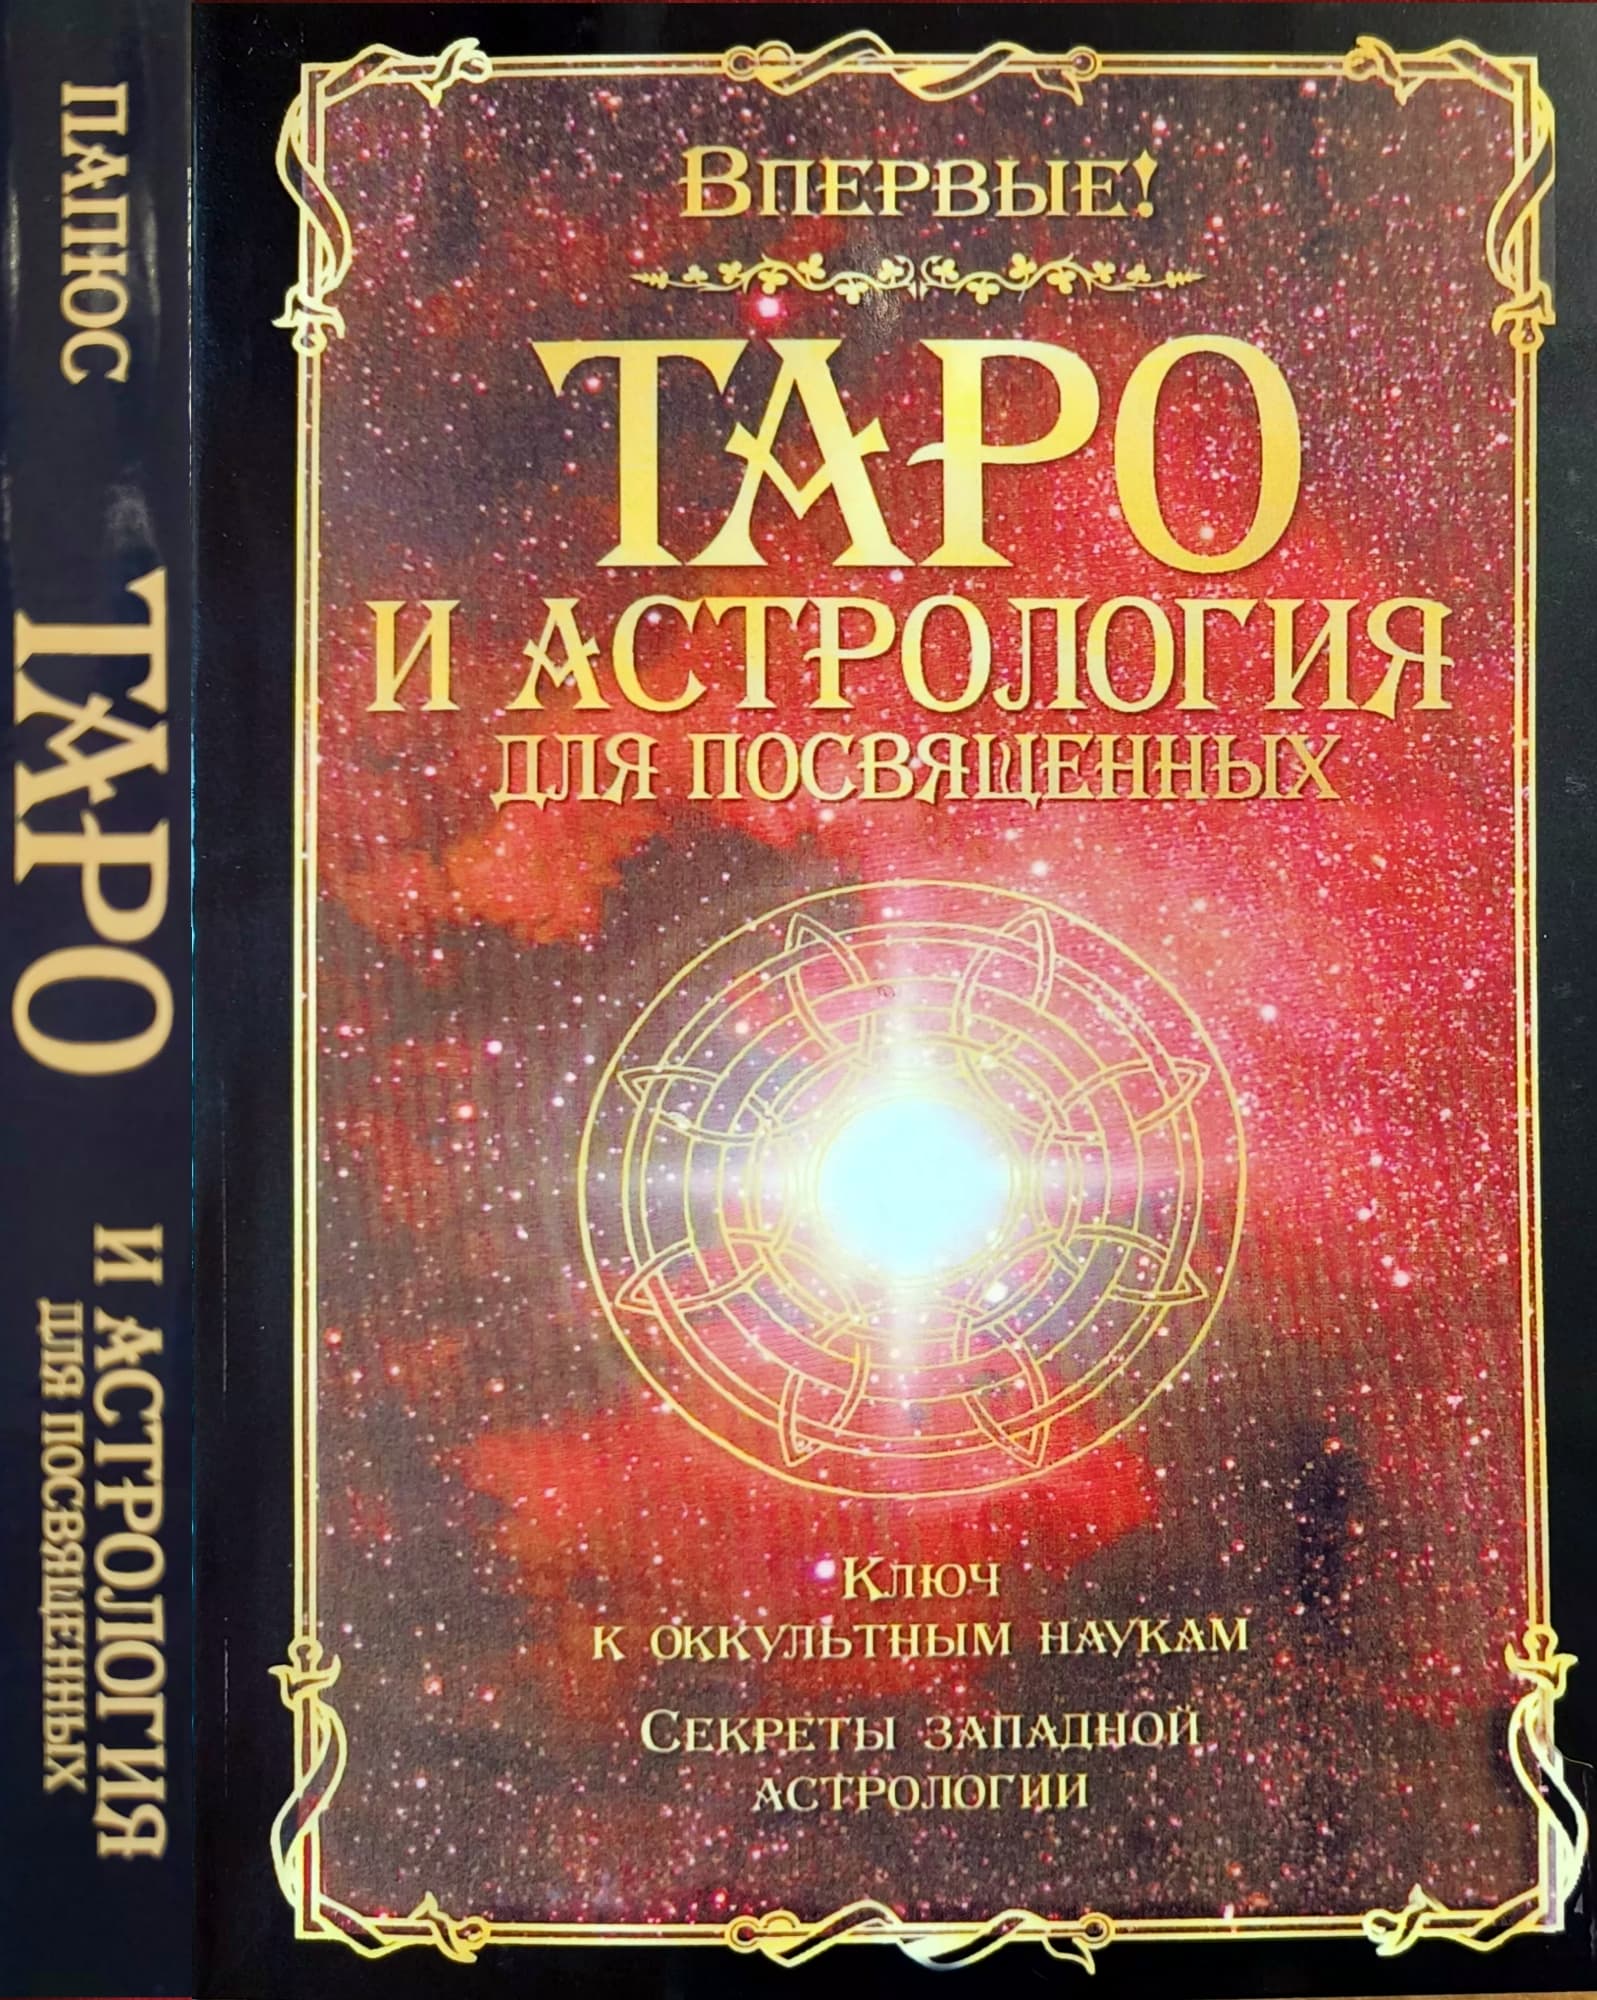 Папюс «Таро и астрология для посвященных» /мяг/